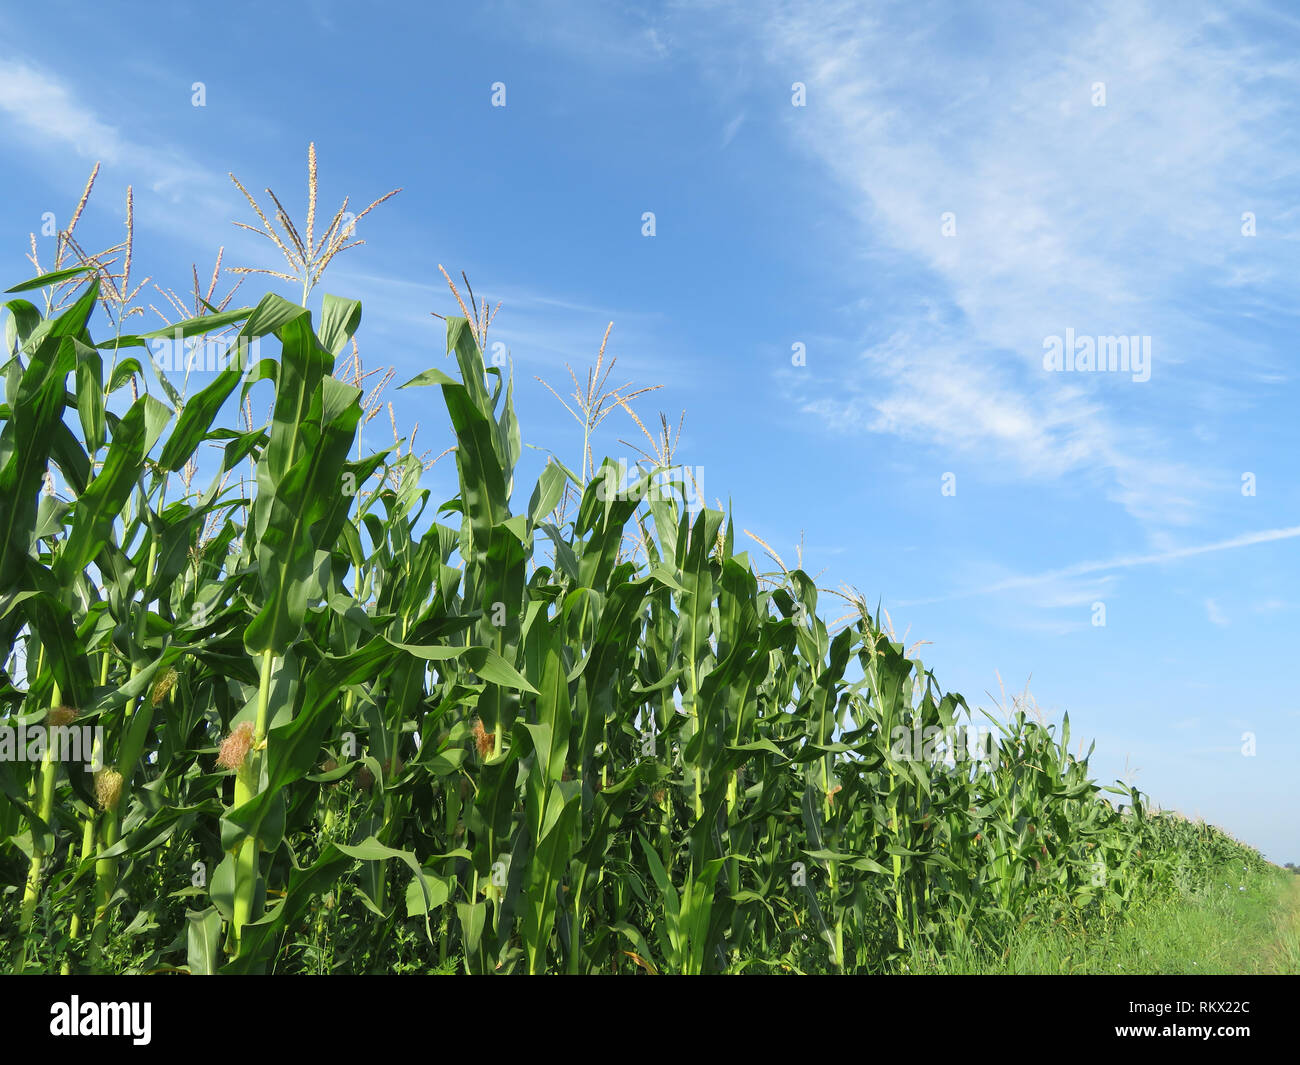 Grüne Maisfeld und blauer Himmel mit weißen Wolken. Maisstängel mit jungen Maiskolben Stockfoto